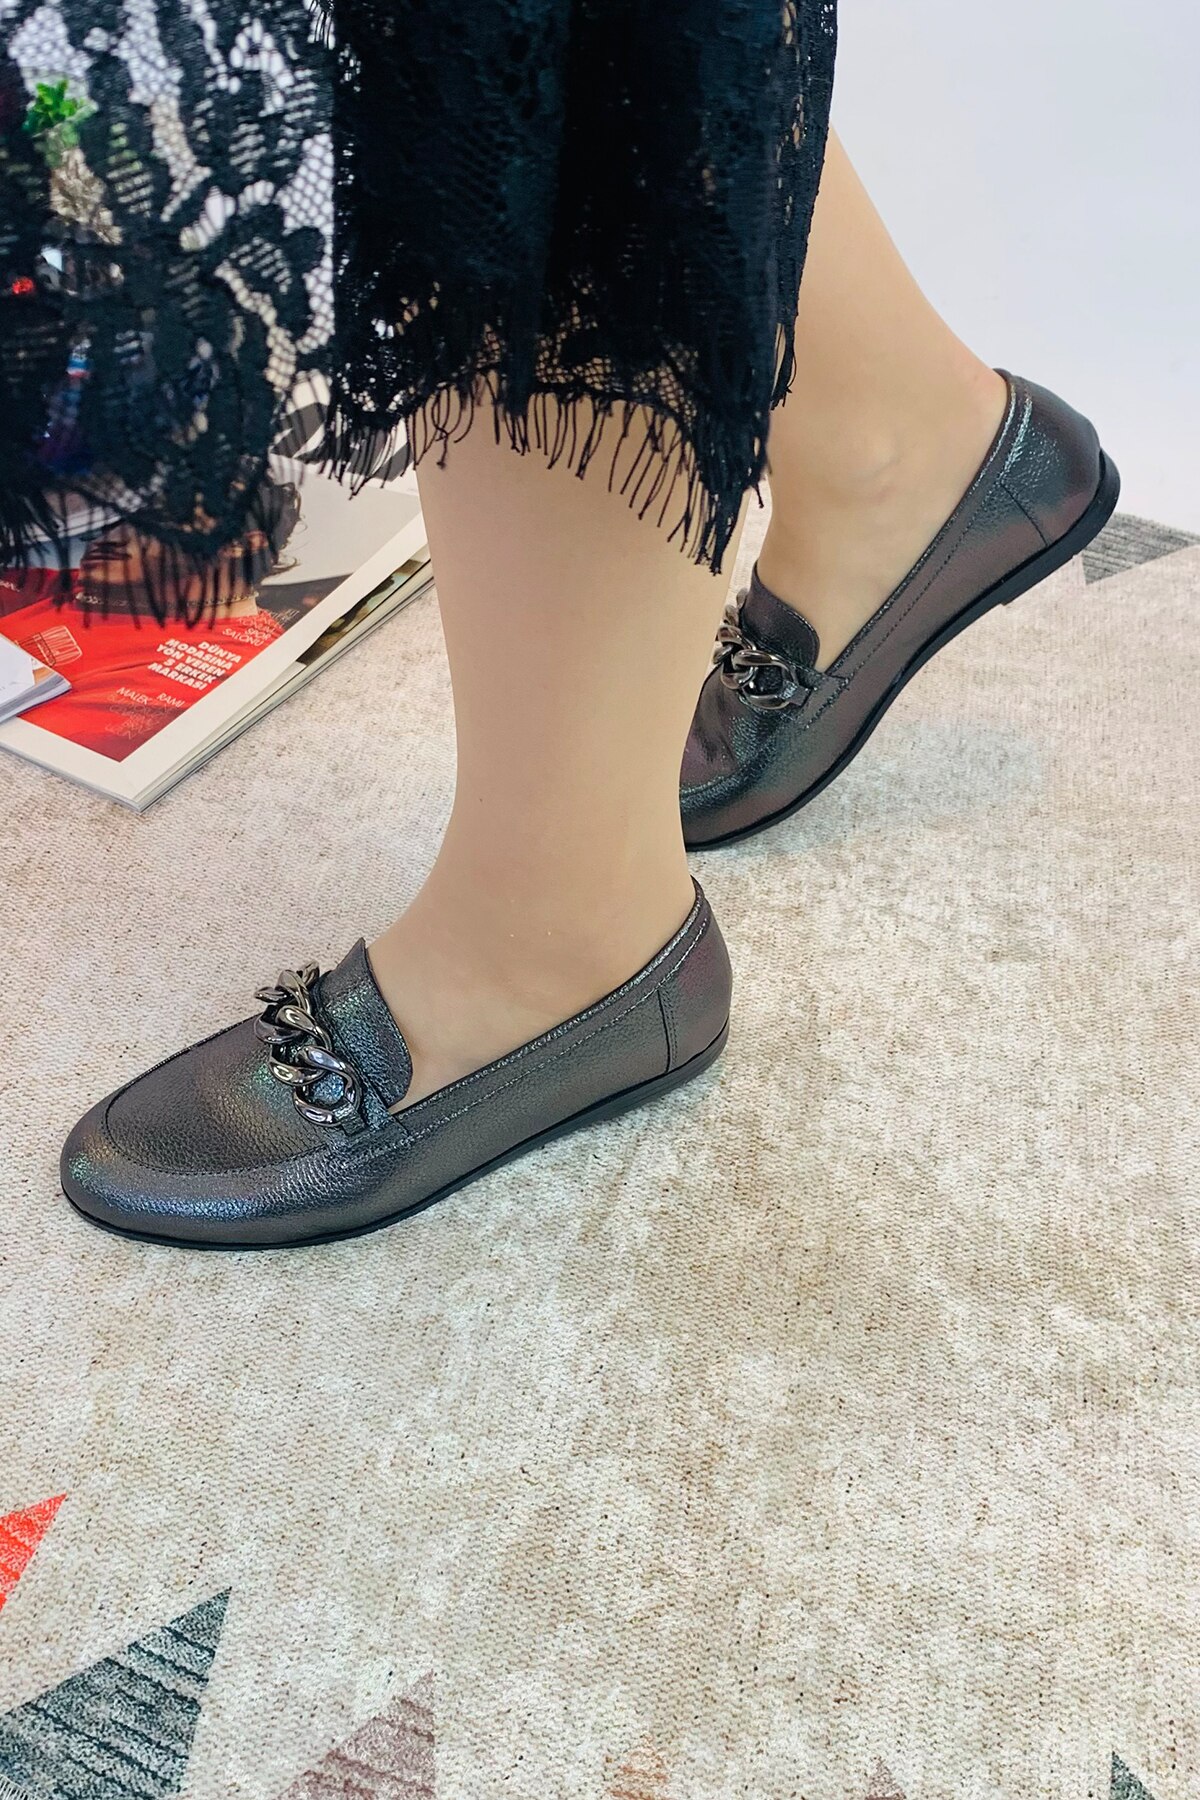 Diğer Kadın Loafer Ayakkabı Modelleri ve Fiyatları - n11.com